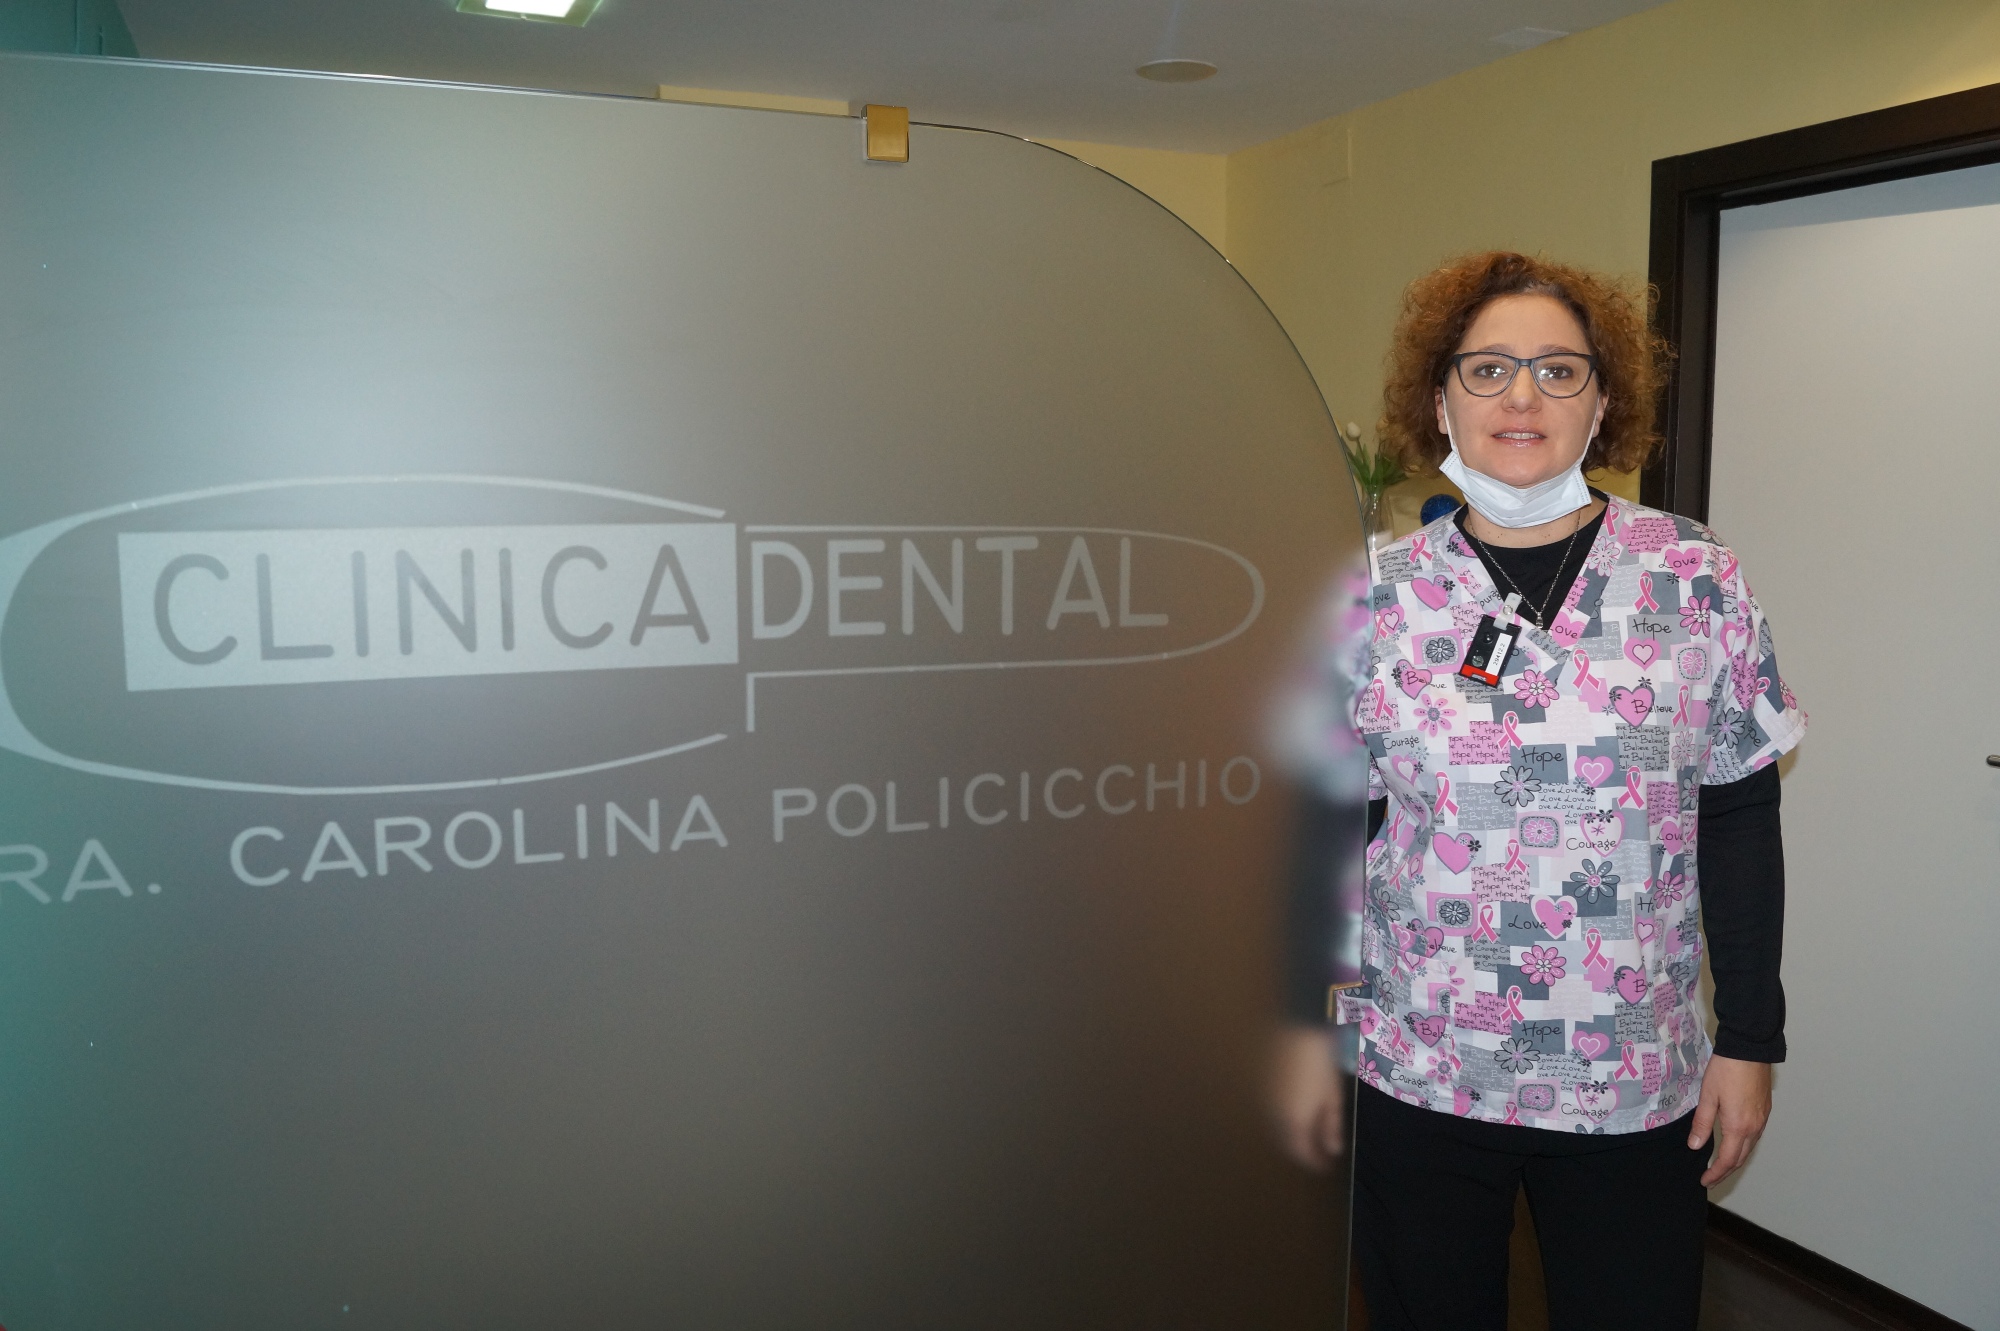 Dra. Carolina Policicchio Badajoz